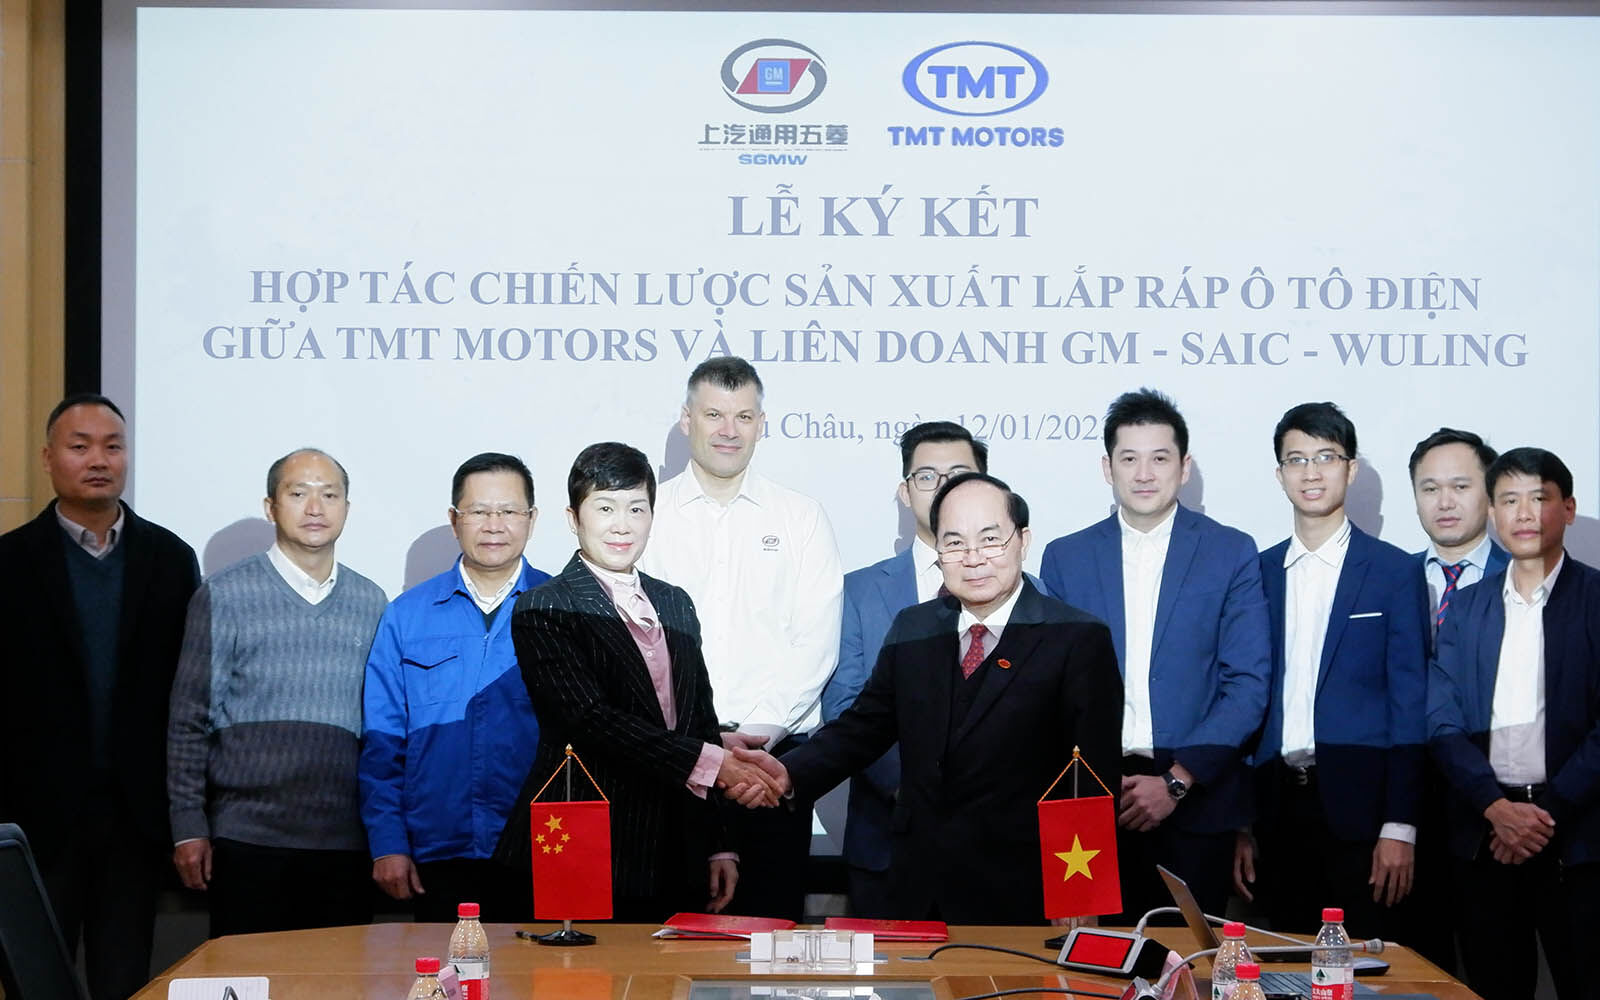 Ông Bùi Văn Hữu (phải) - Chủ tịch HĐQT TMT Motors cùng đại diện của liên doanh GM - (SAIC - WULING) tại buổi lễ ký kết hợp tác, ngày 12/01/2023